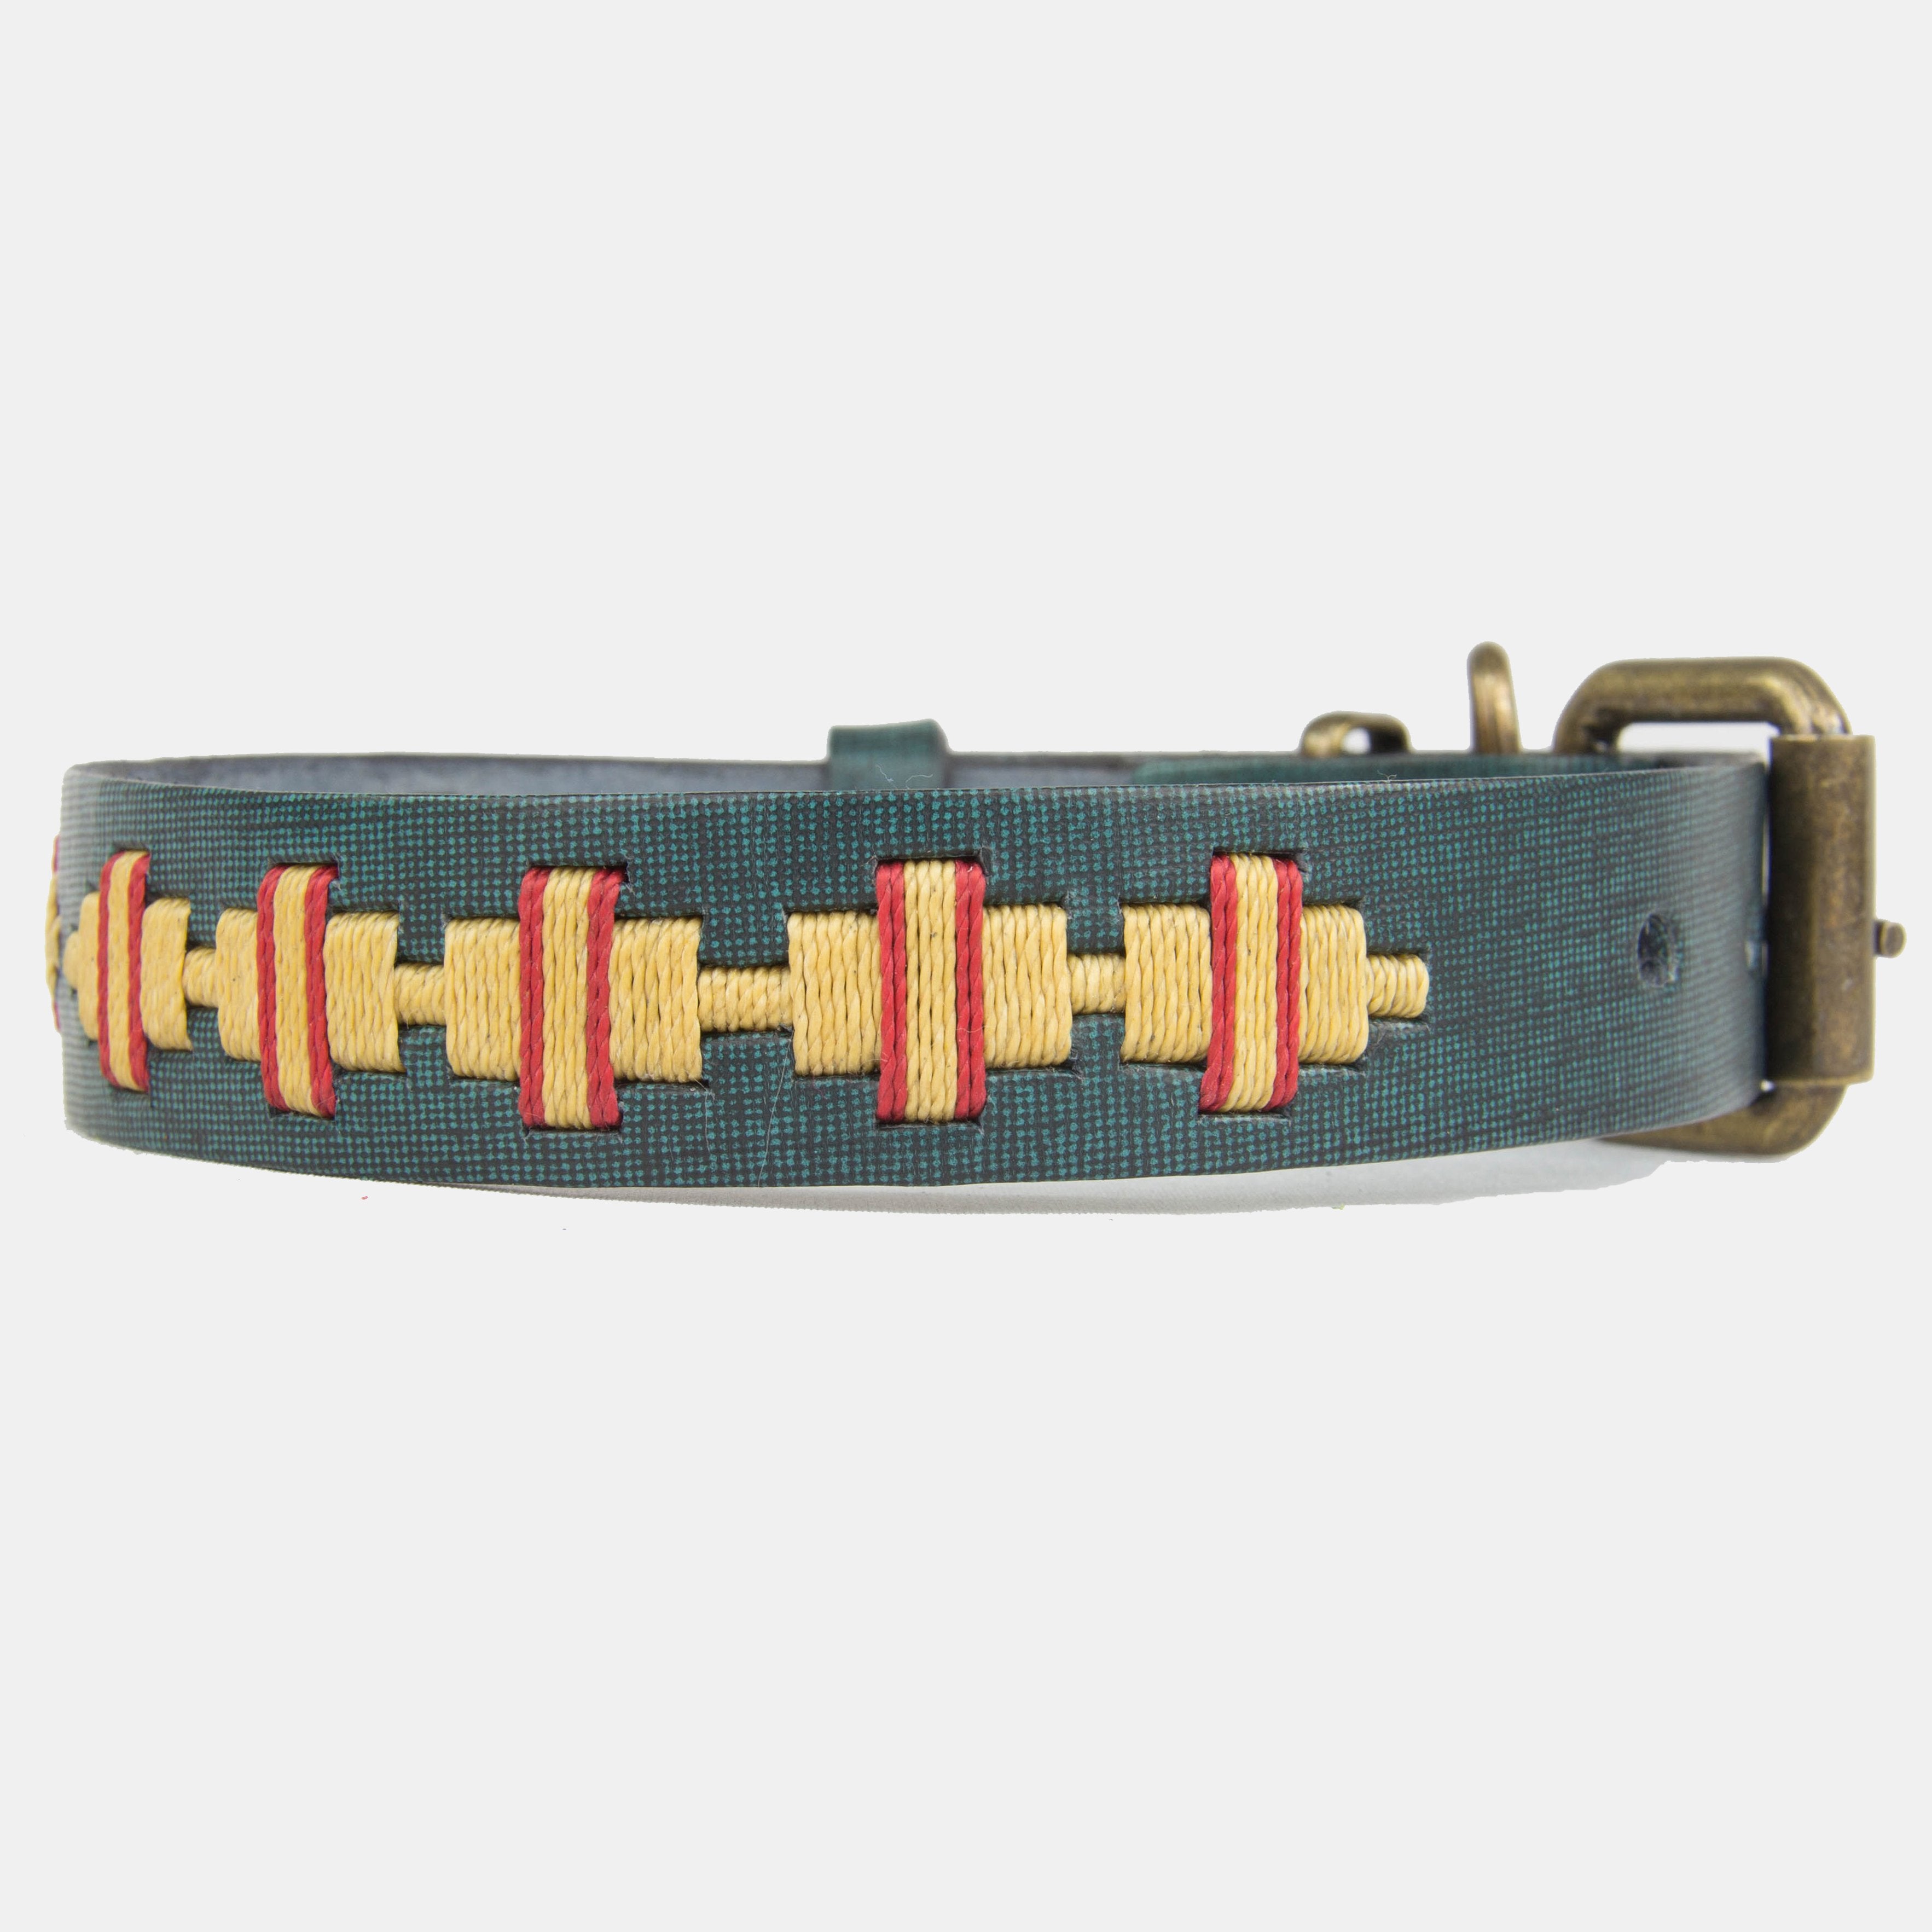 Collar para perros Mauloa, hecho en cuero, modelo Toby, color Jeans con bordado simple en colores